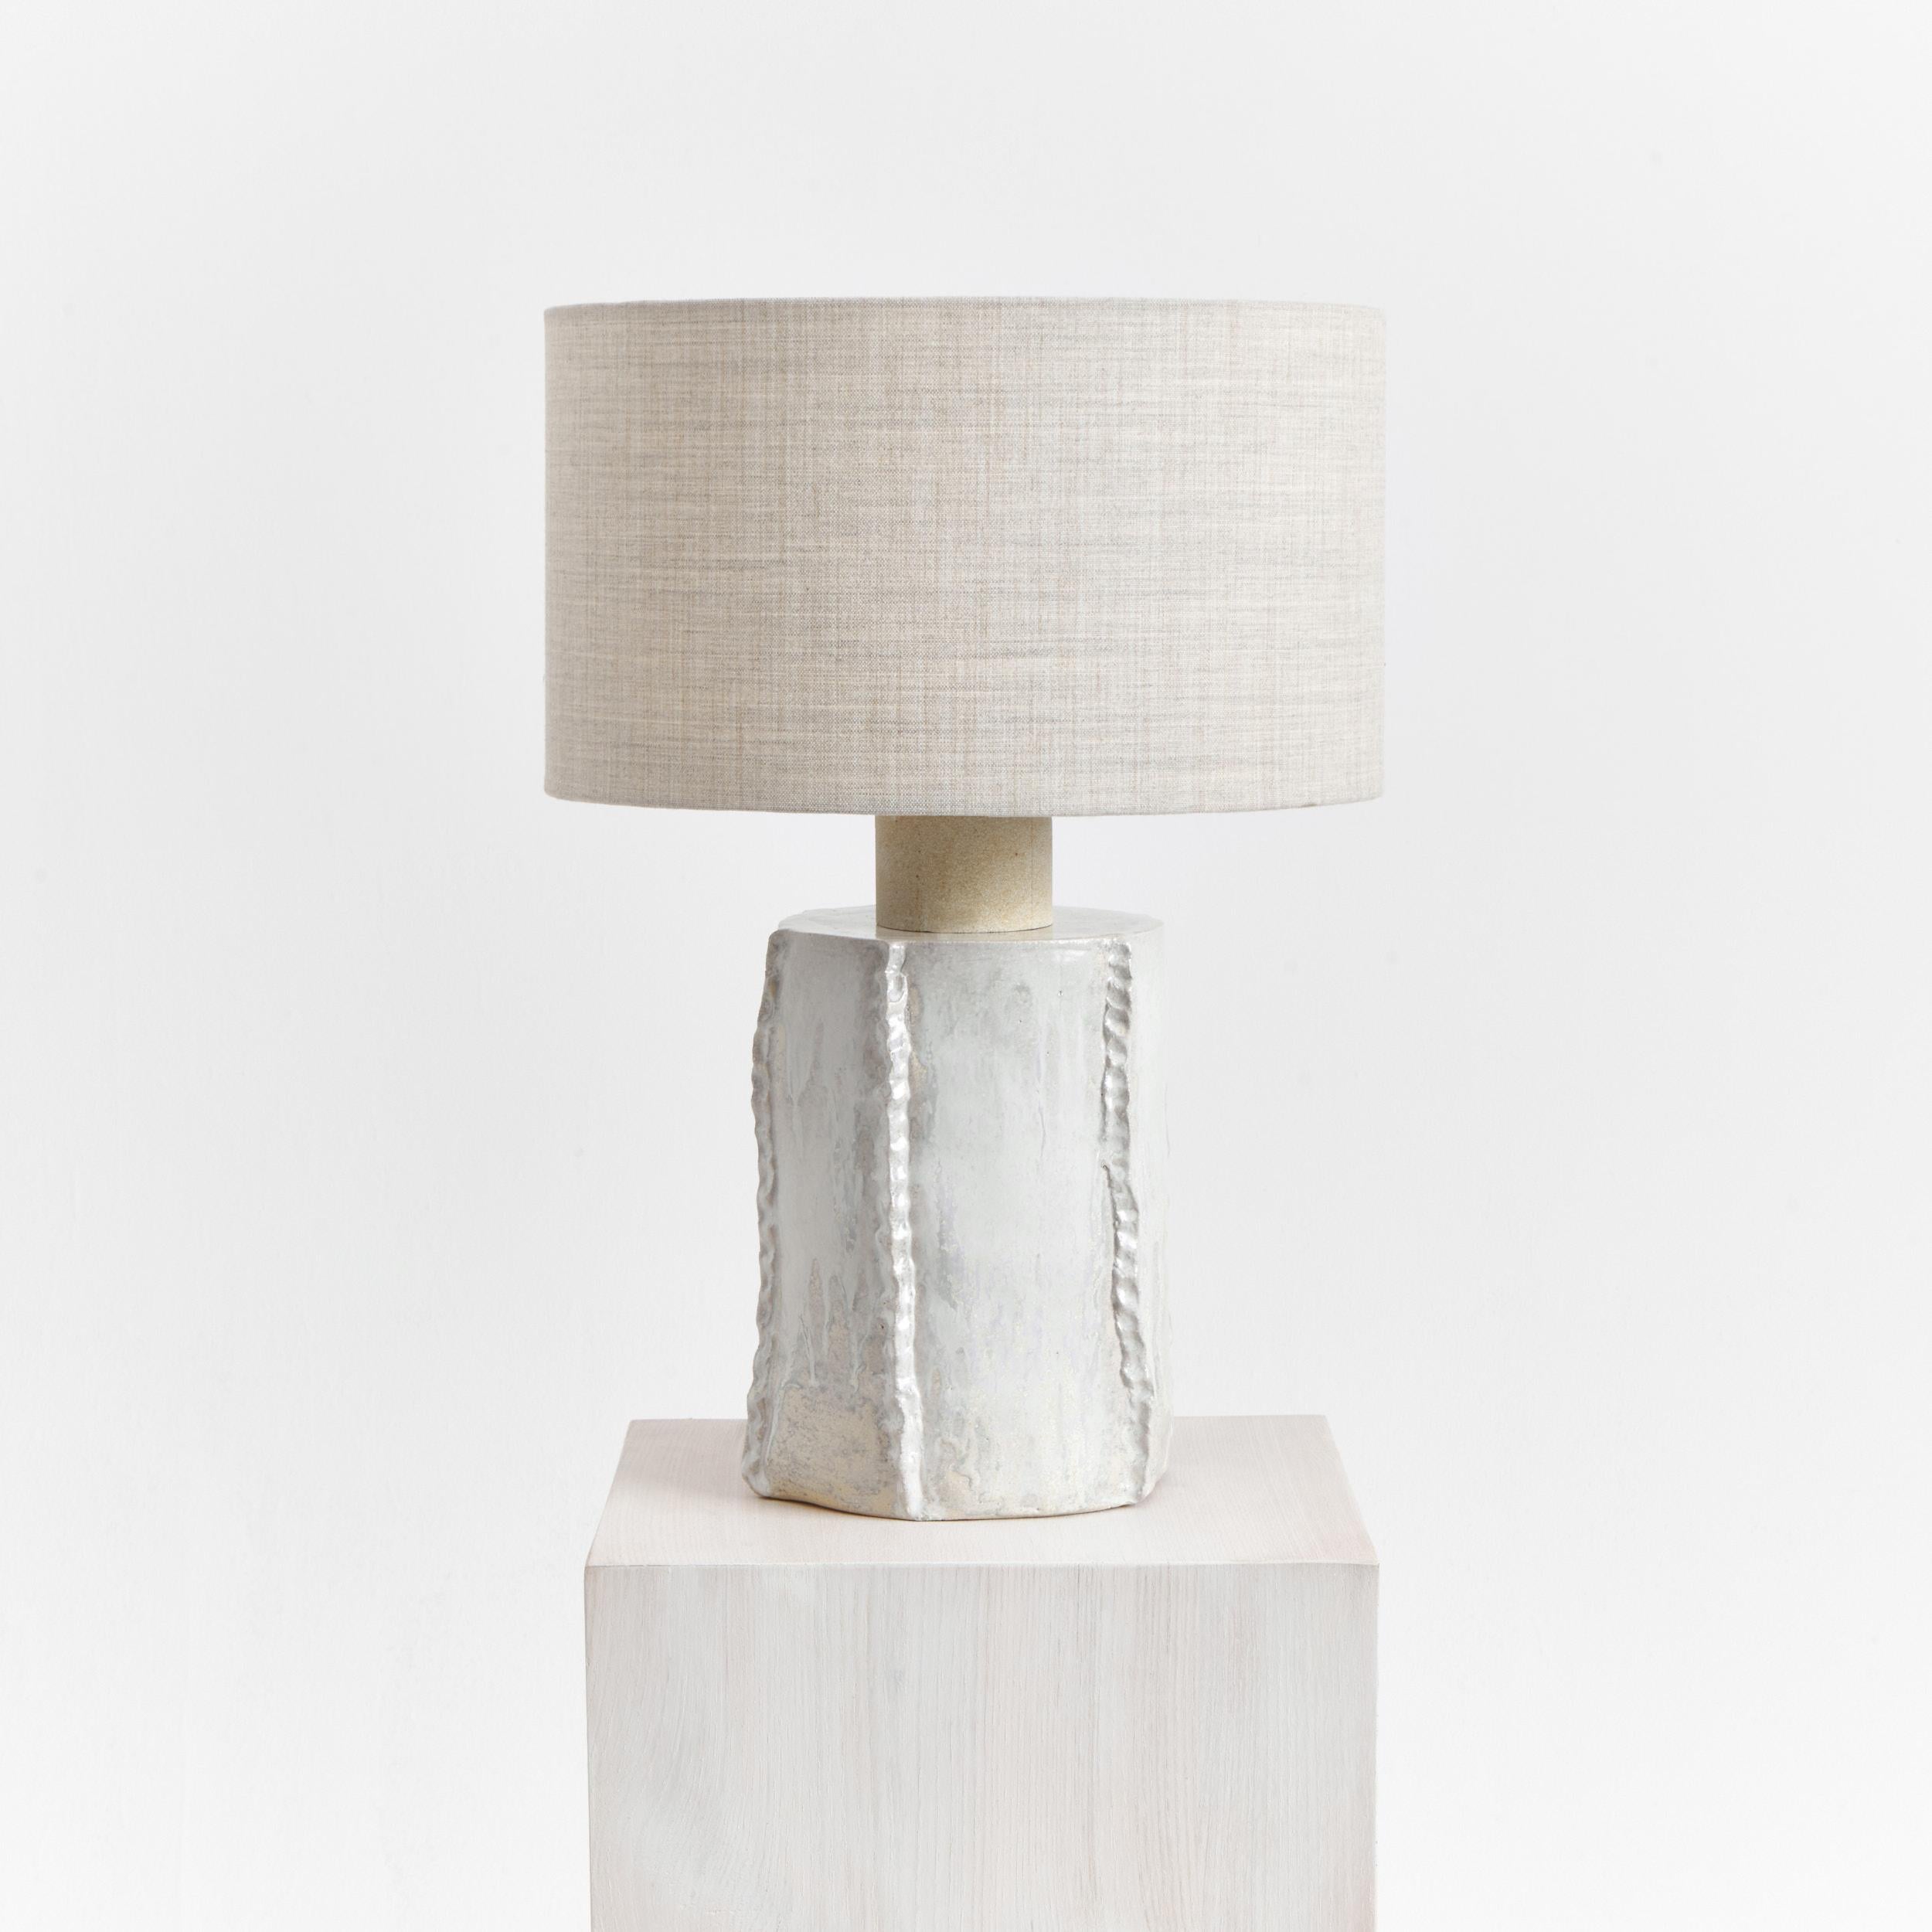 Lampe de table Totem en Rocquefort
Conçu par le project 213A en 2023

Lampe artisanale en céramique, fabriquée dans l'atelier de céramique de Project 213A, avec un abat-jour rond composé de 90 % de laine et de 10 % de pire nylon.
Chaque pièce est